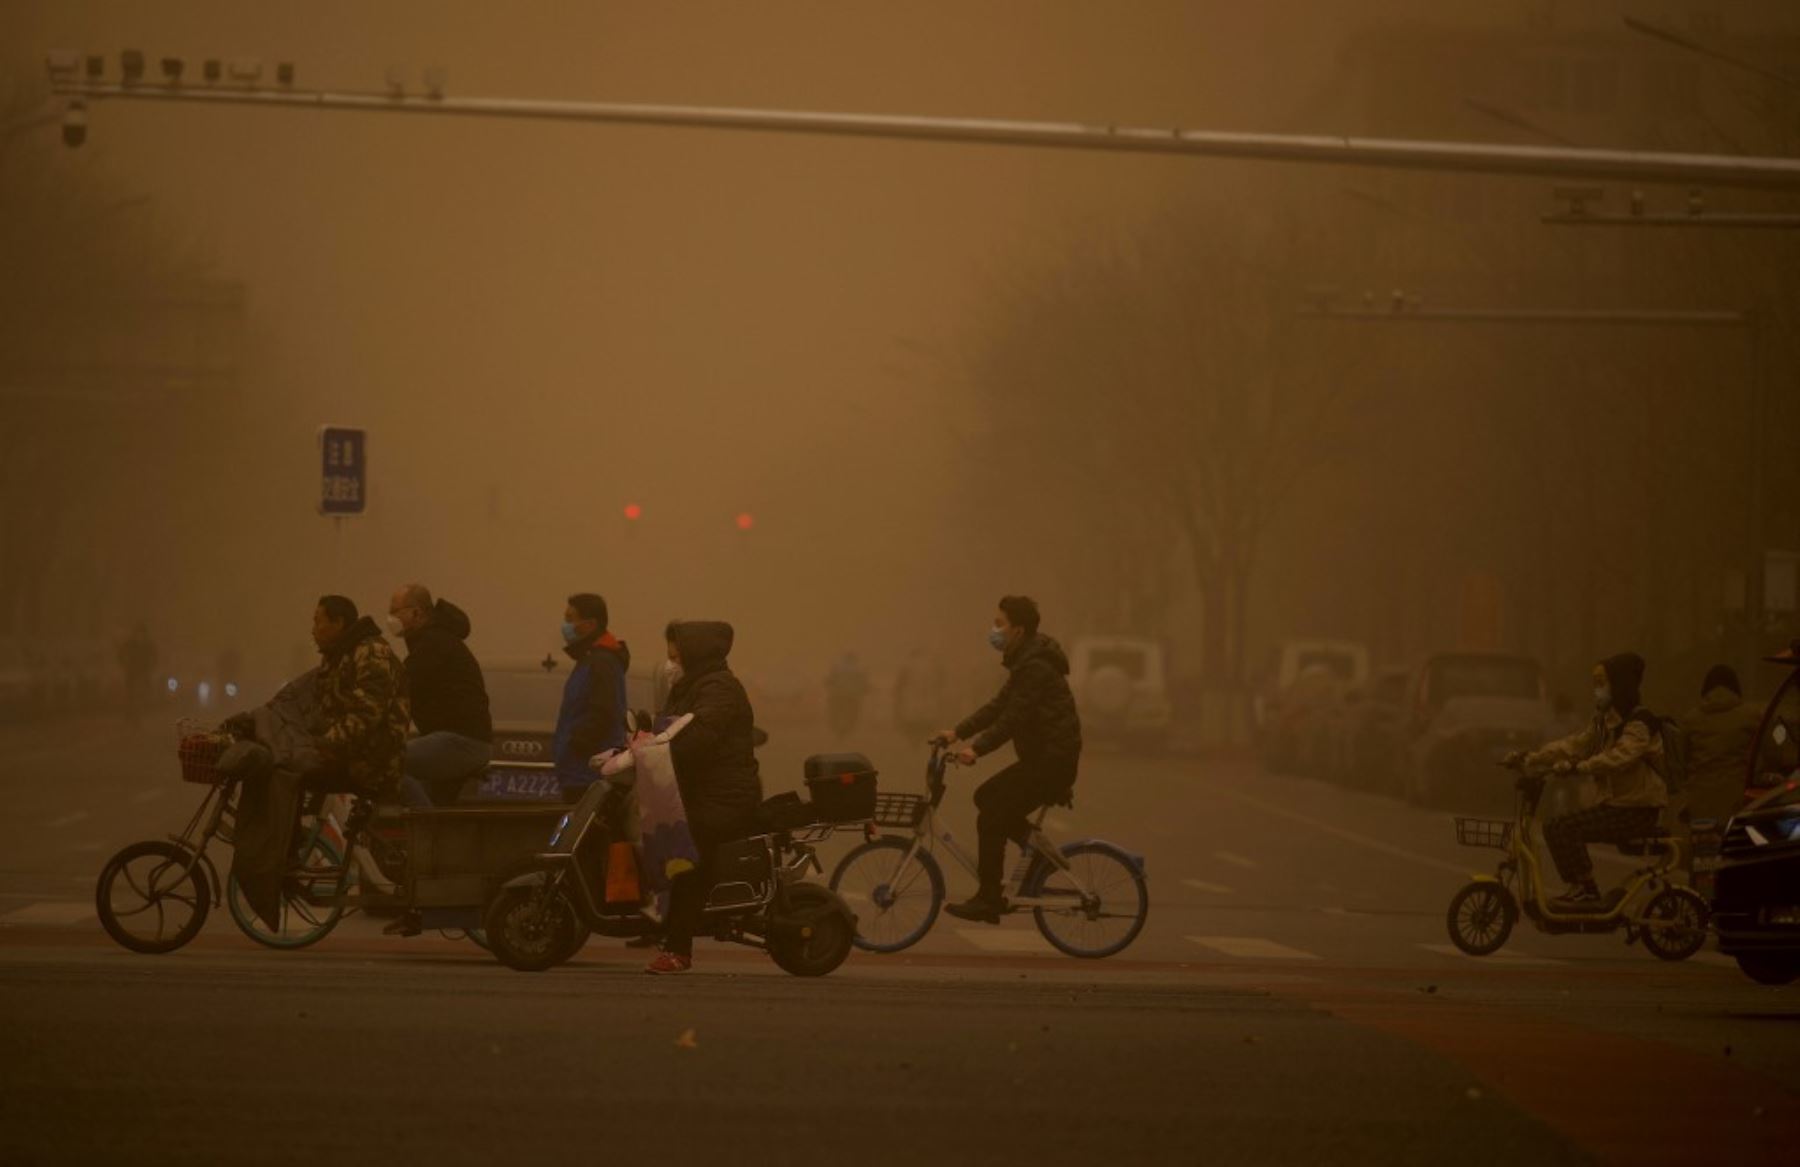 La gente cruza una calle durante una tormenta de arena en Beijing.Foto: AFP